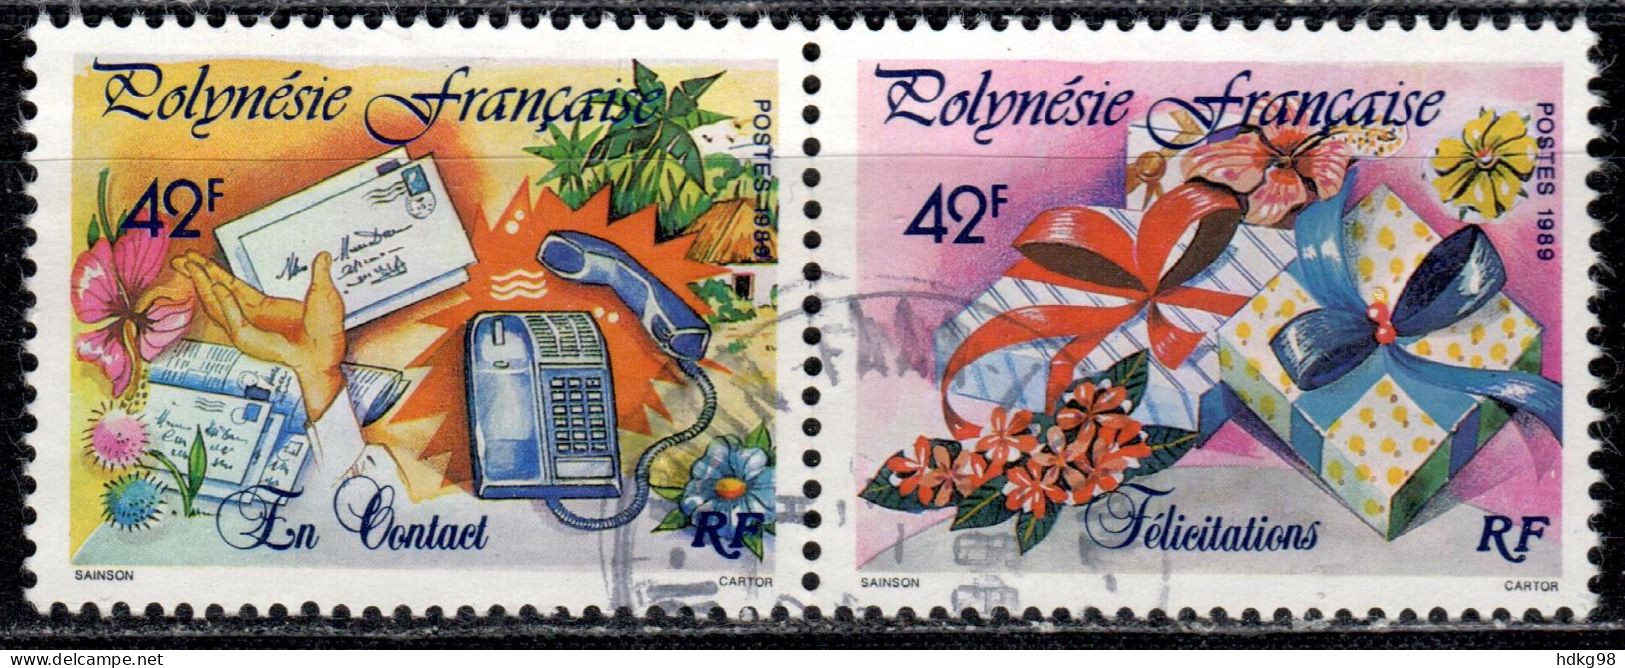 F P+ Polynesien 1989 Mi 540-41 Grußmarken - Used Stamps